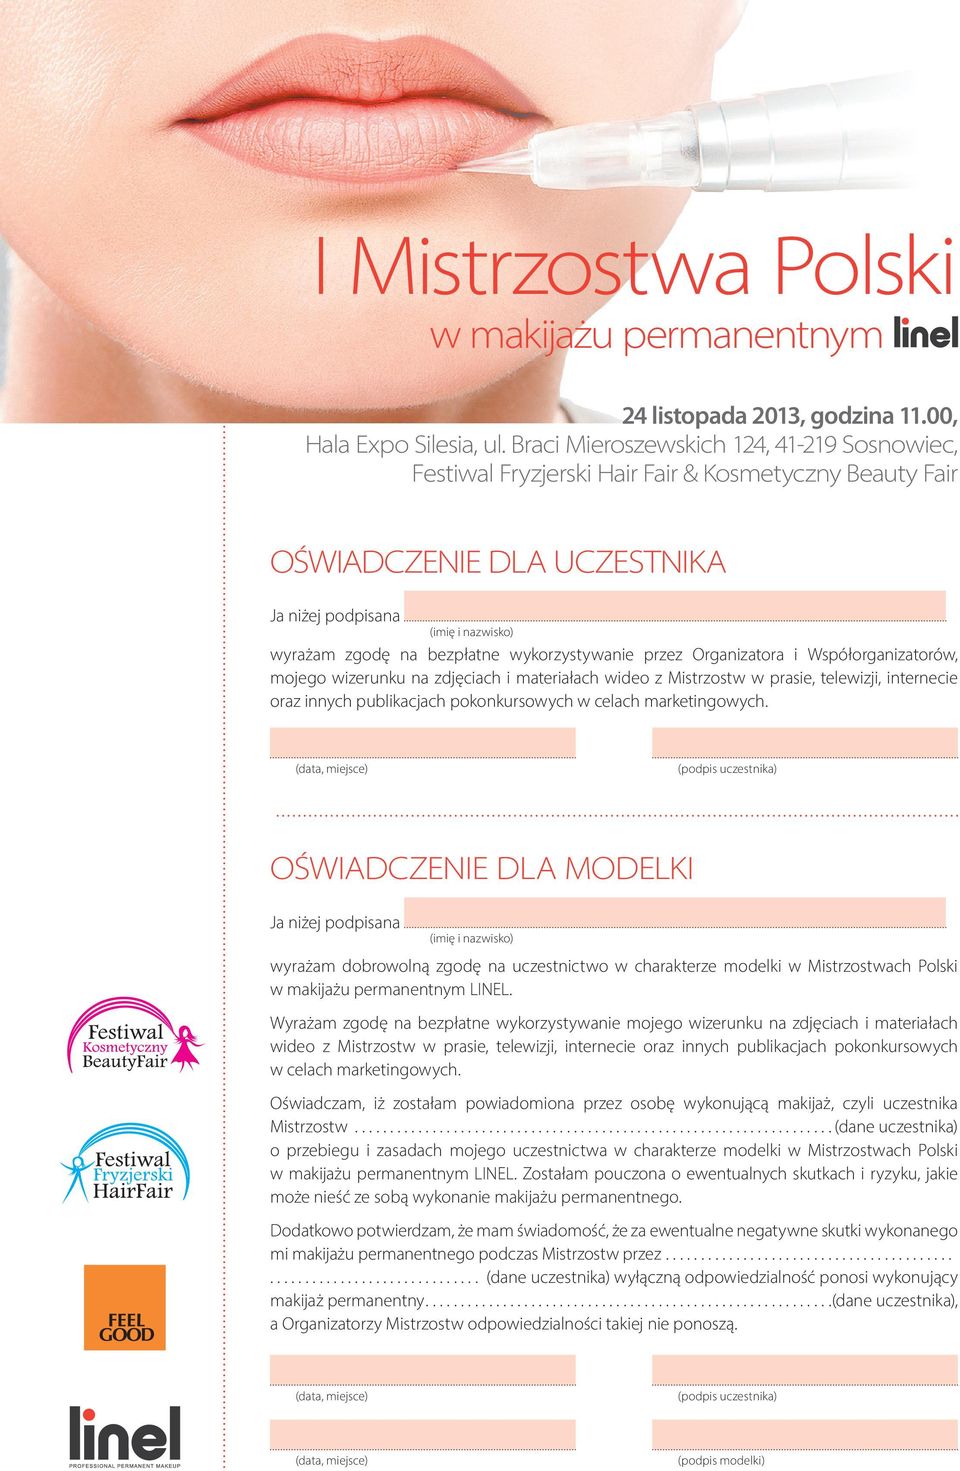 (podpis uczestnika) OŚWIADCZENIE DLA MODELKI Ja niżej podpisana (imię i nazwisko) wyrażam dobrowolną zgodę na uczestnictwo w charakterze modelki w Mistrzostwach Polski LINEL.